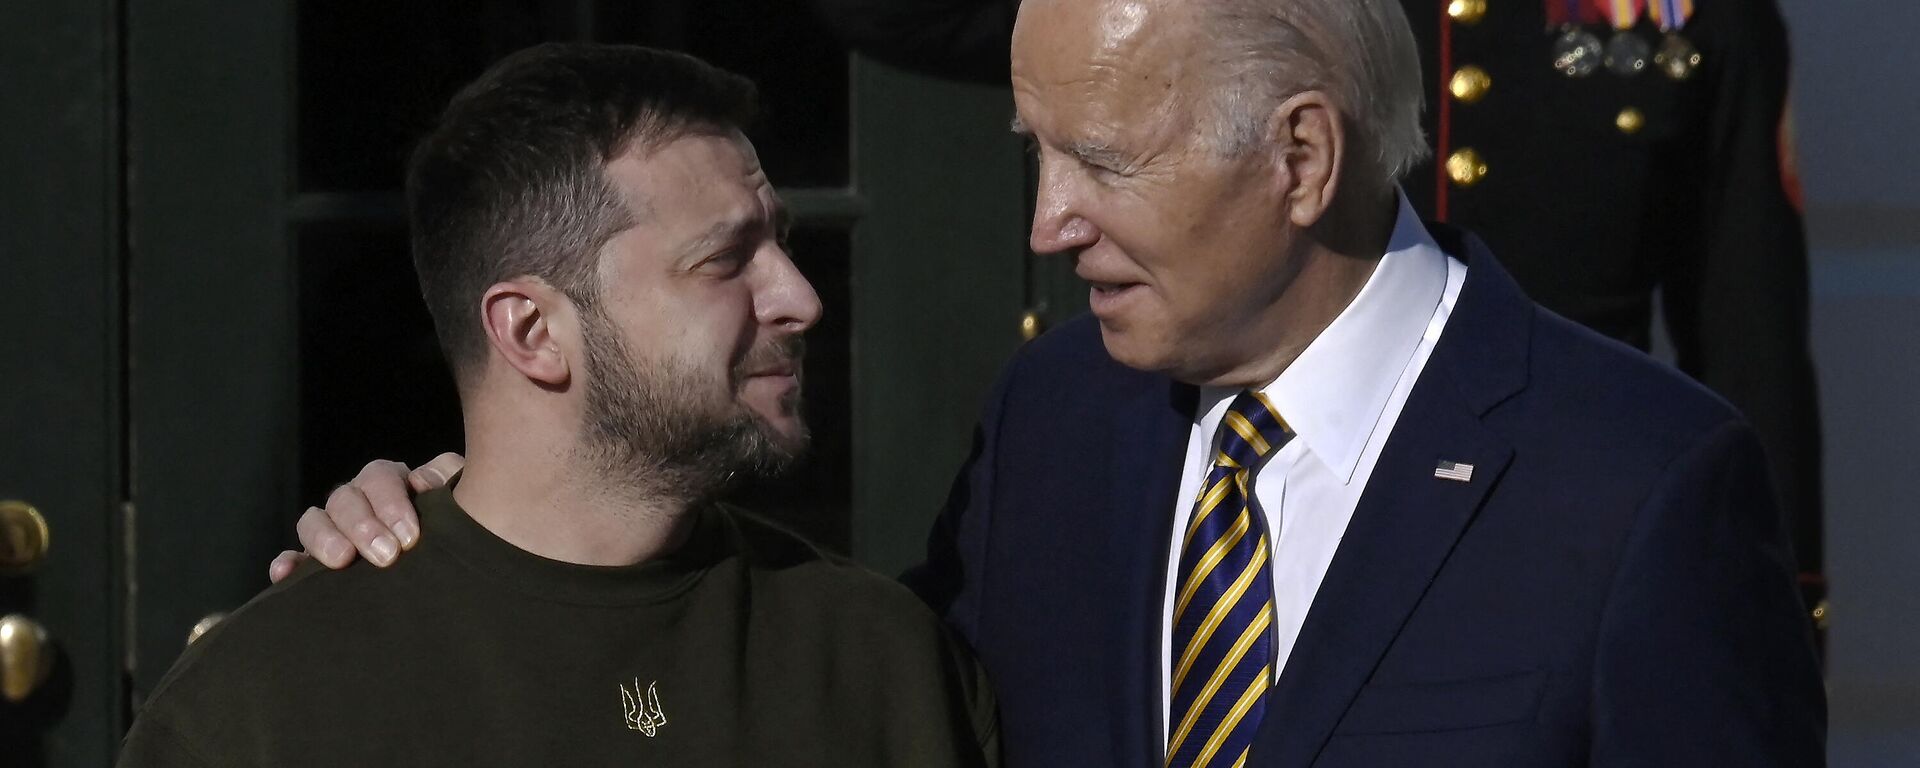 Tổng thống Hoa Kỳ Joe Biden chào đón Tổng thống Ukraina Vladimir Zelensky tại Bãi cỏ phía Nam Nhà Trắng ở Washington, ngày 21/12/2022 - Sputnik Việt Nam, 1920, 23.12.2022